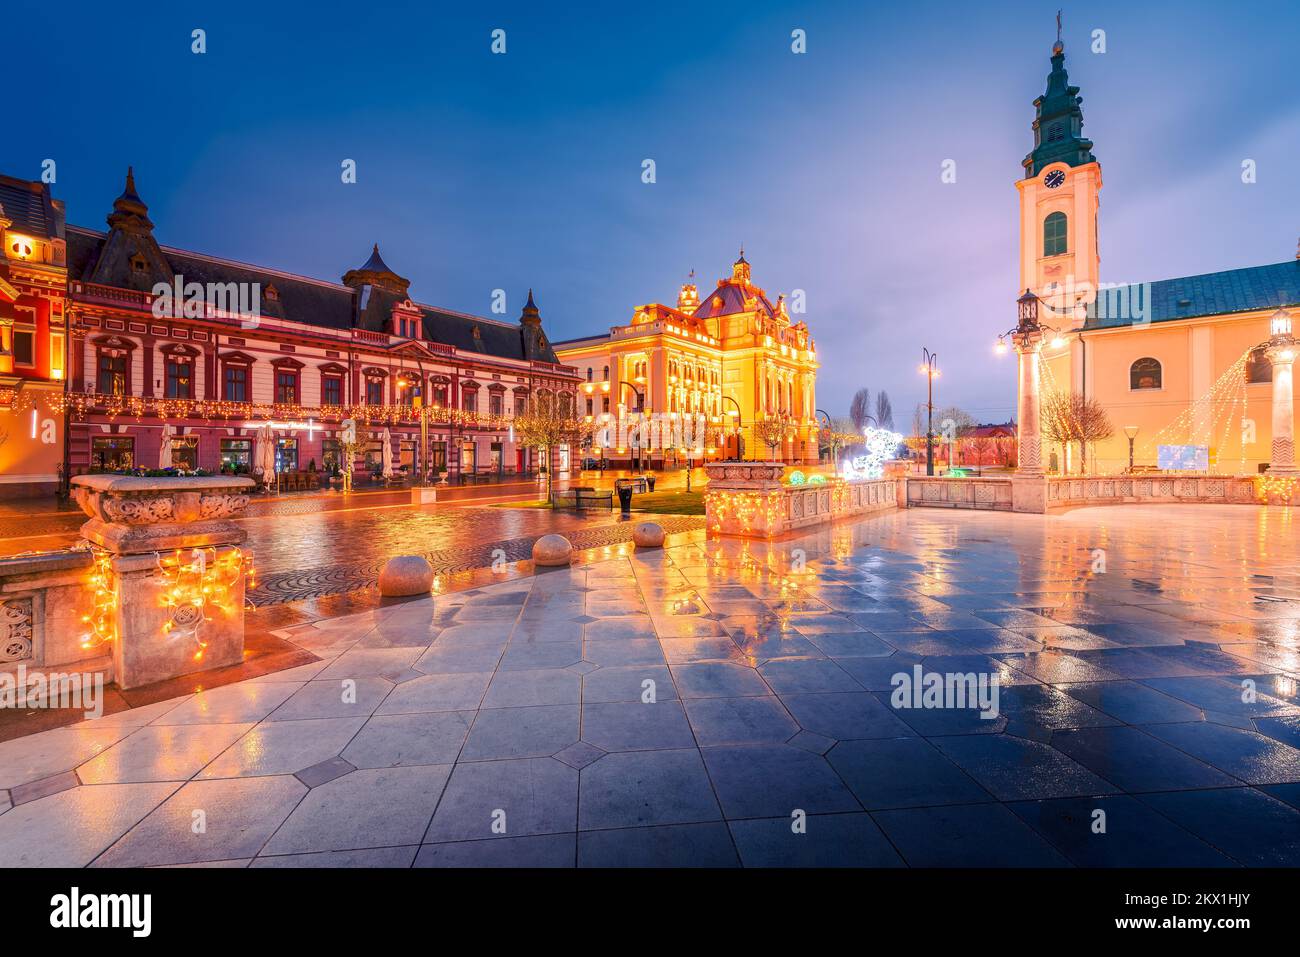 Oradea, Rumänien. Weihnachtsdekorationen in der wunderschönen barocken Stadt, der hisotrischen Region Crisana-Transsilvanien. Stockfoto